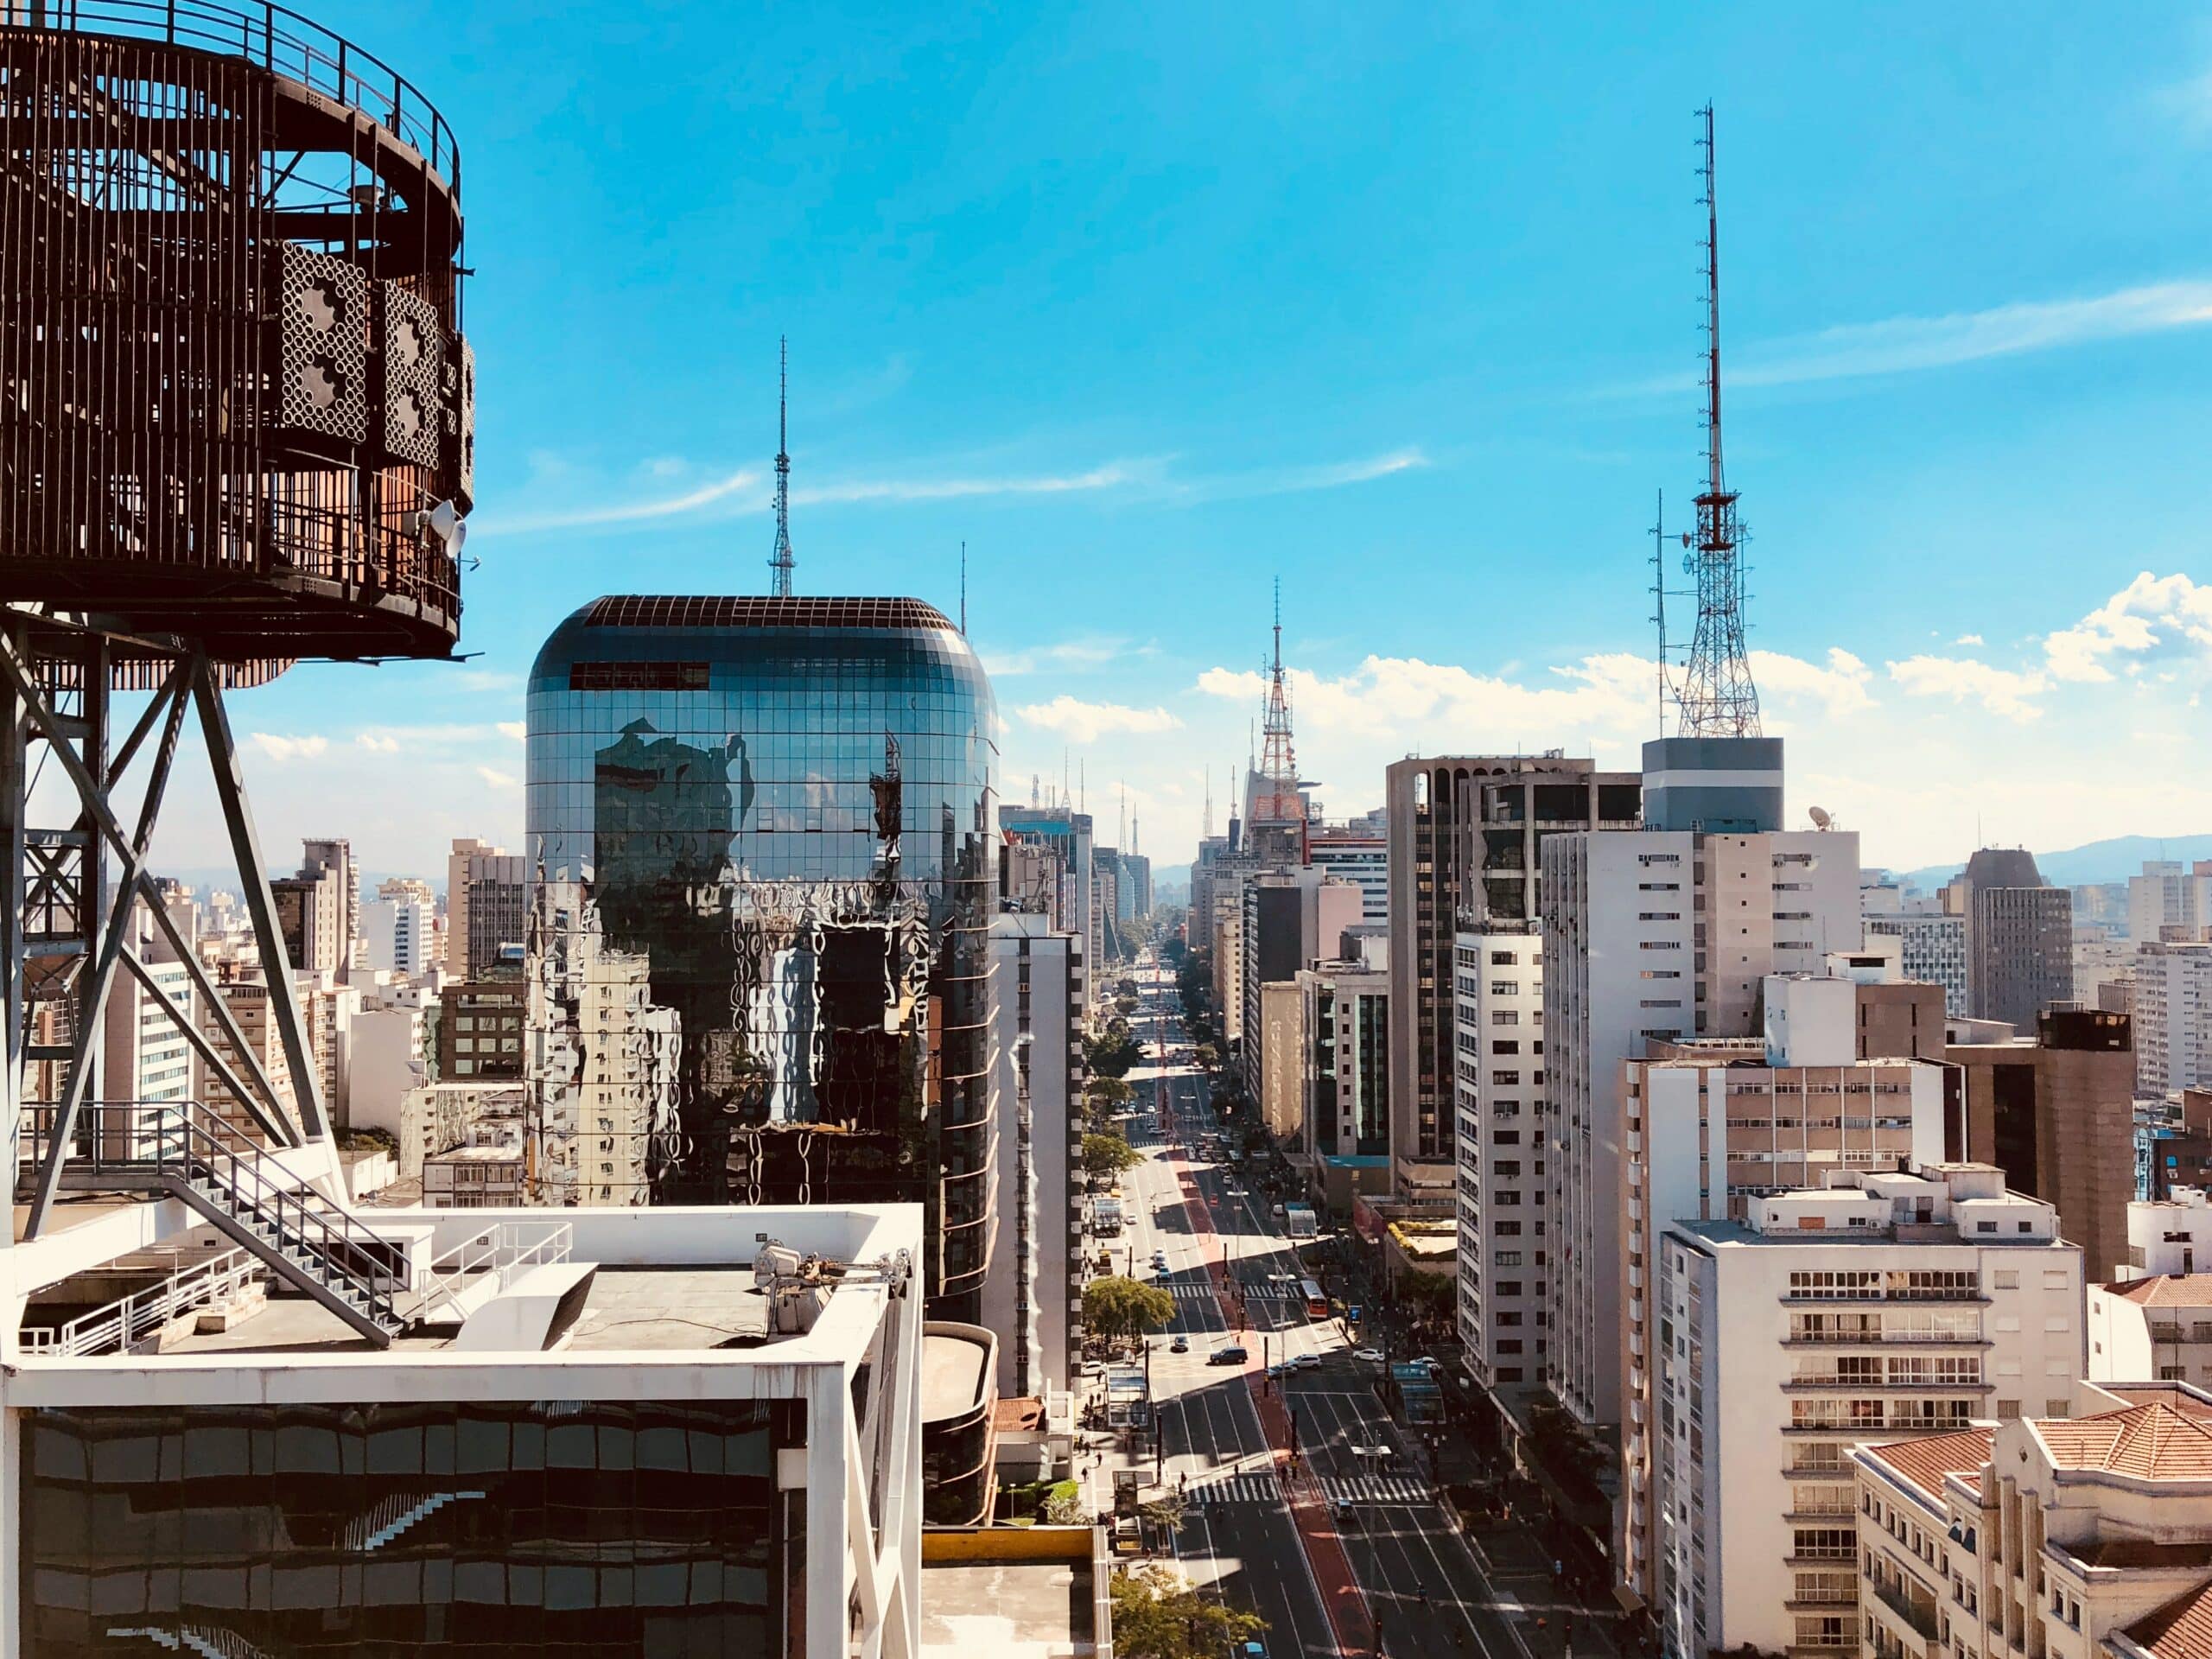 Vista da Avenida Paulista, em São Paulo, com inúmeros prédios e ruas com pouco trânsito